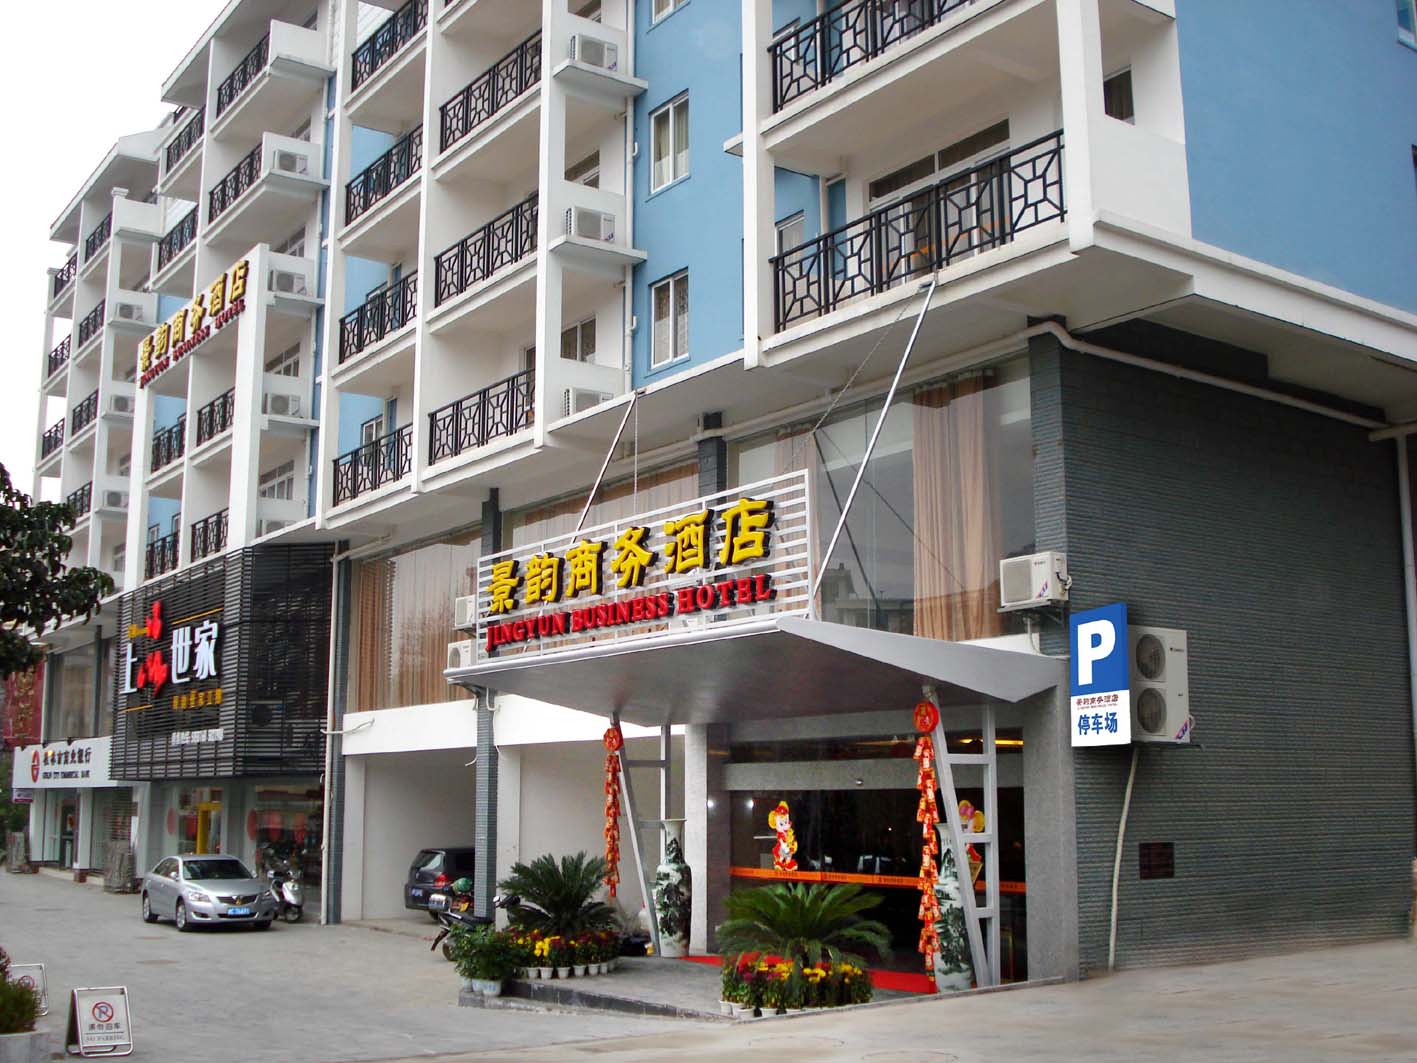 桂林市景韻ビジネスホテル